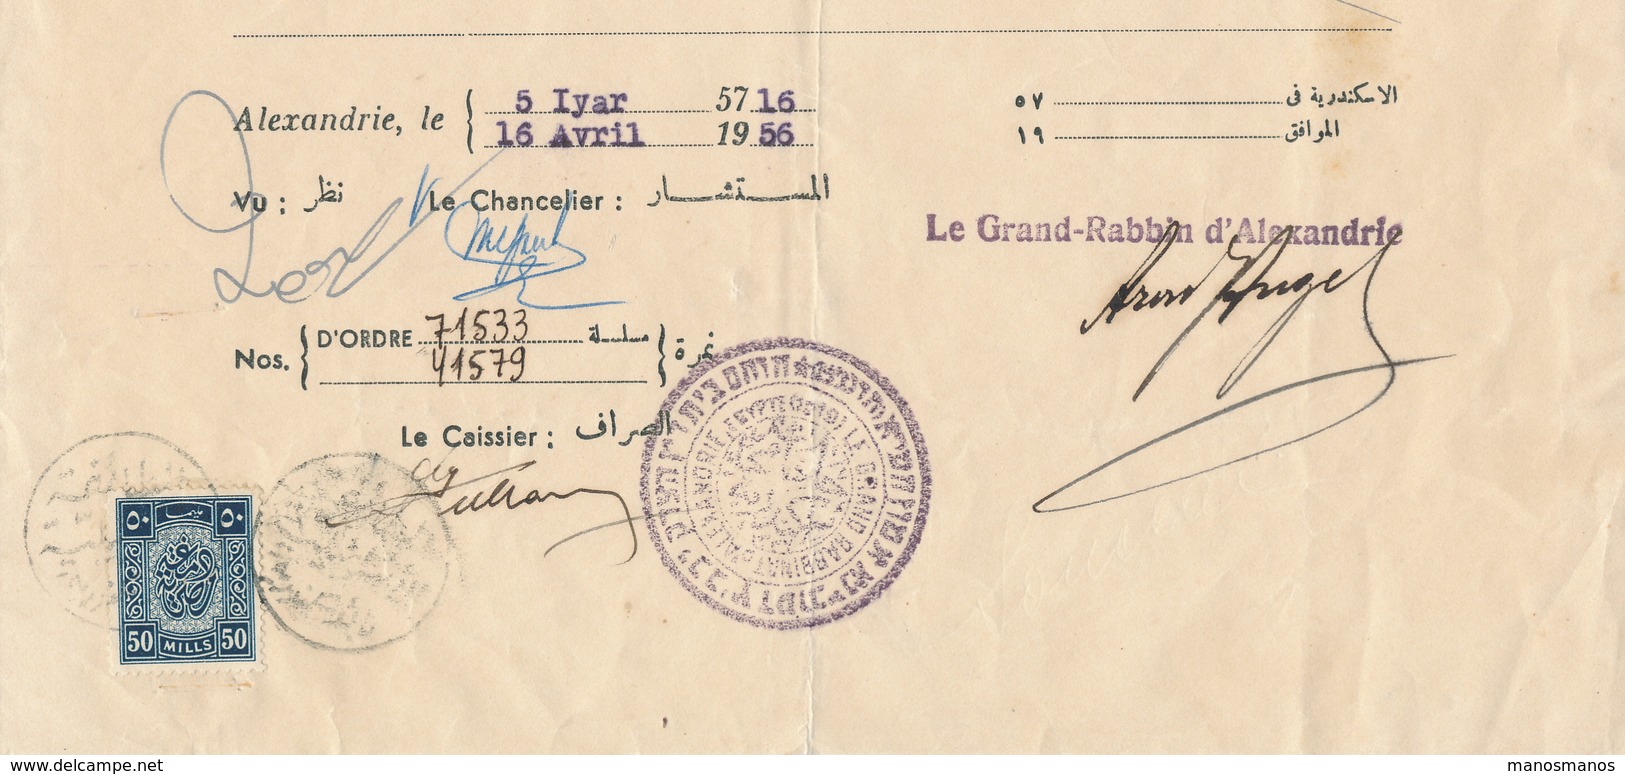 273/27 - THEME JUDAICA EGYPTE - Certificat 1956 Grand Rabbin D' ALEXANDRIE Aron Angel Pour Félix Souccari - Non Classés